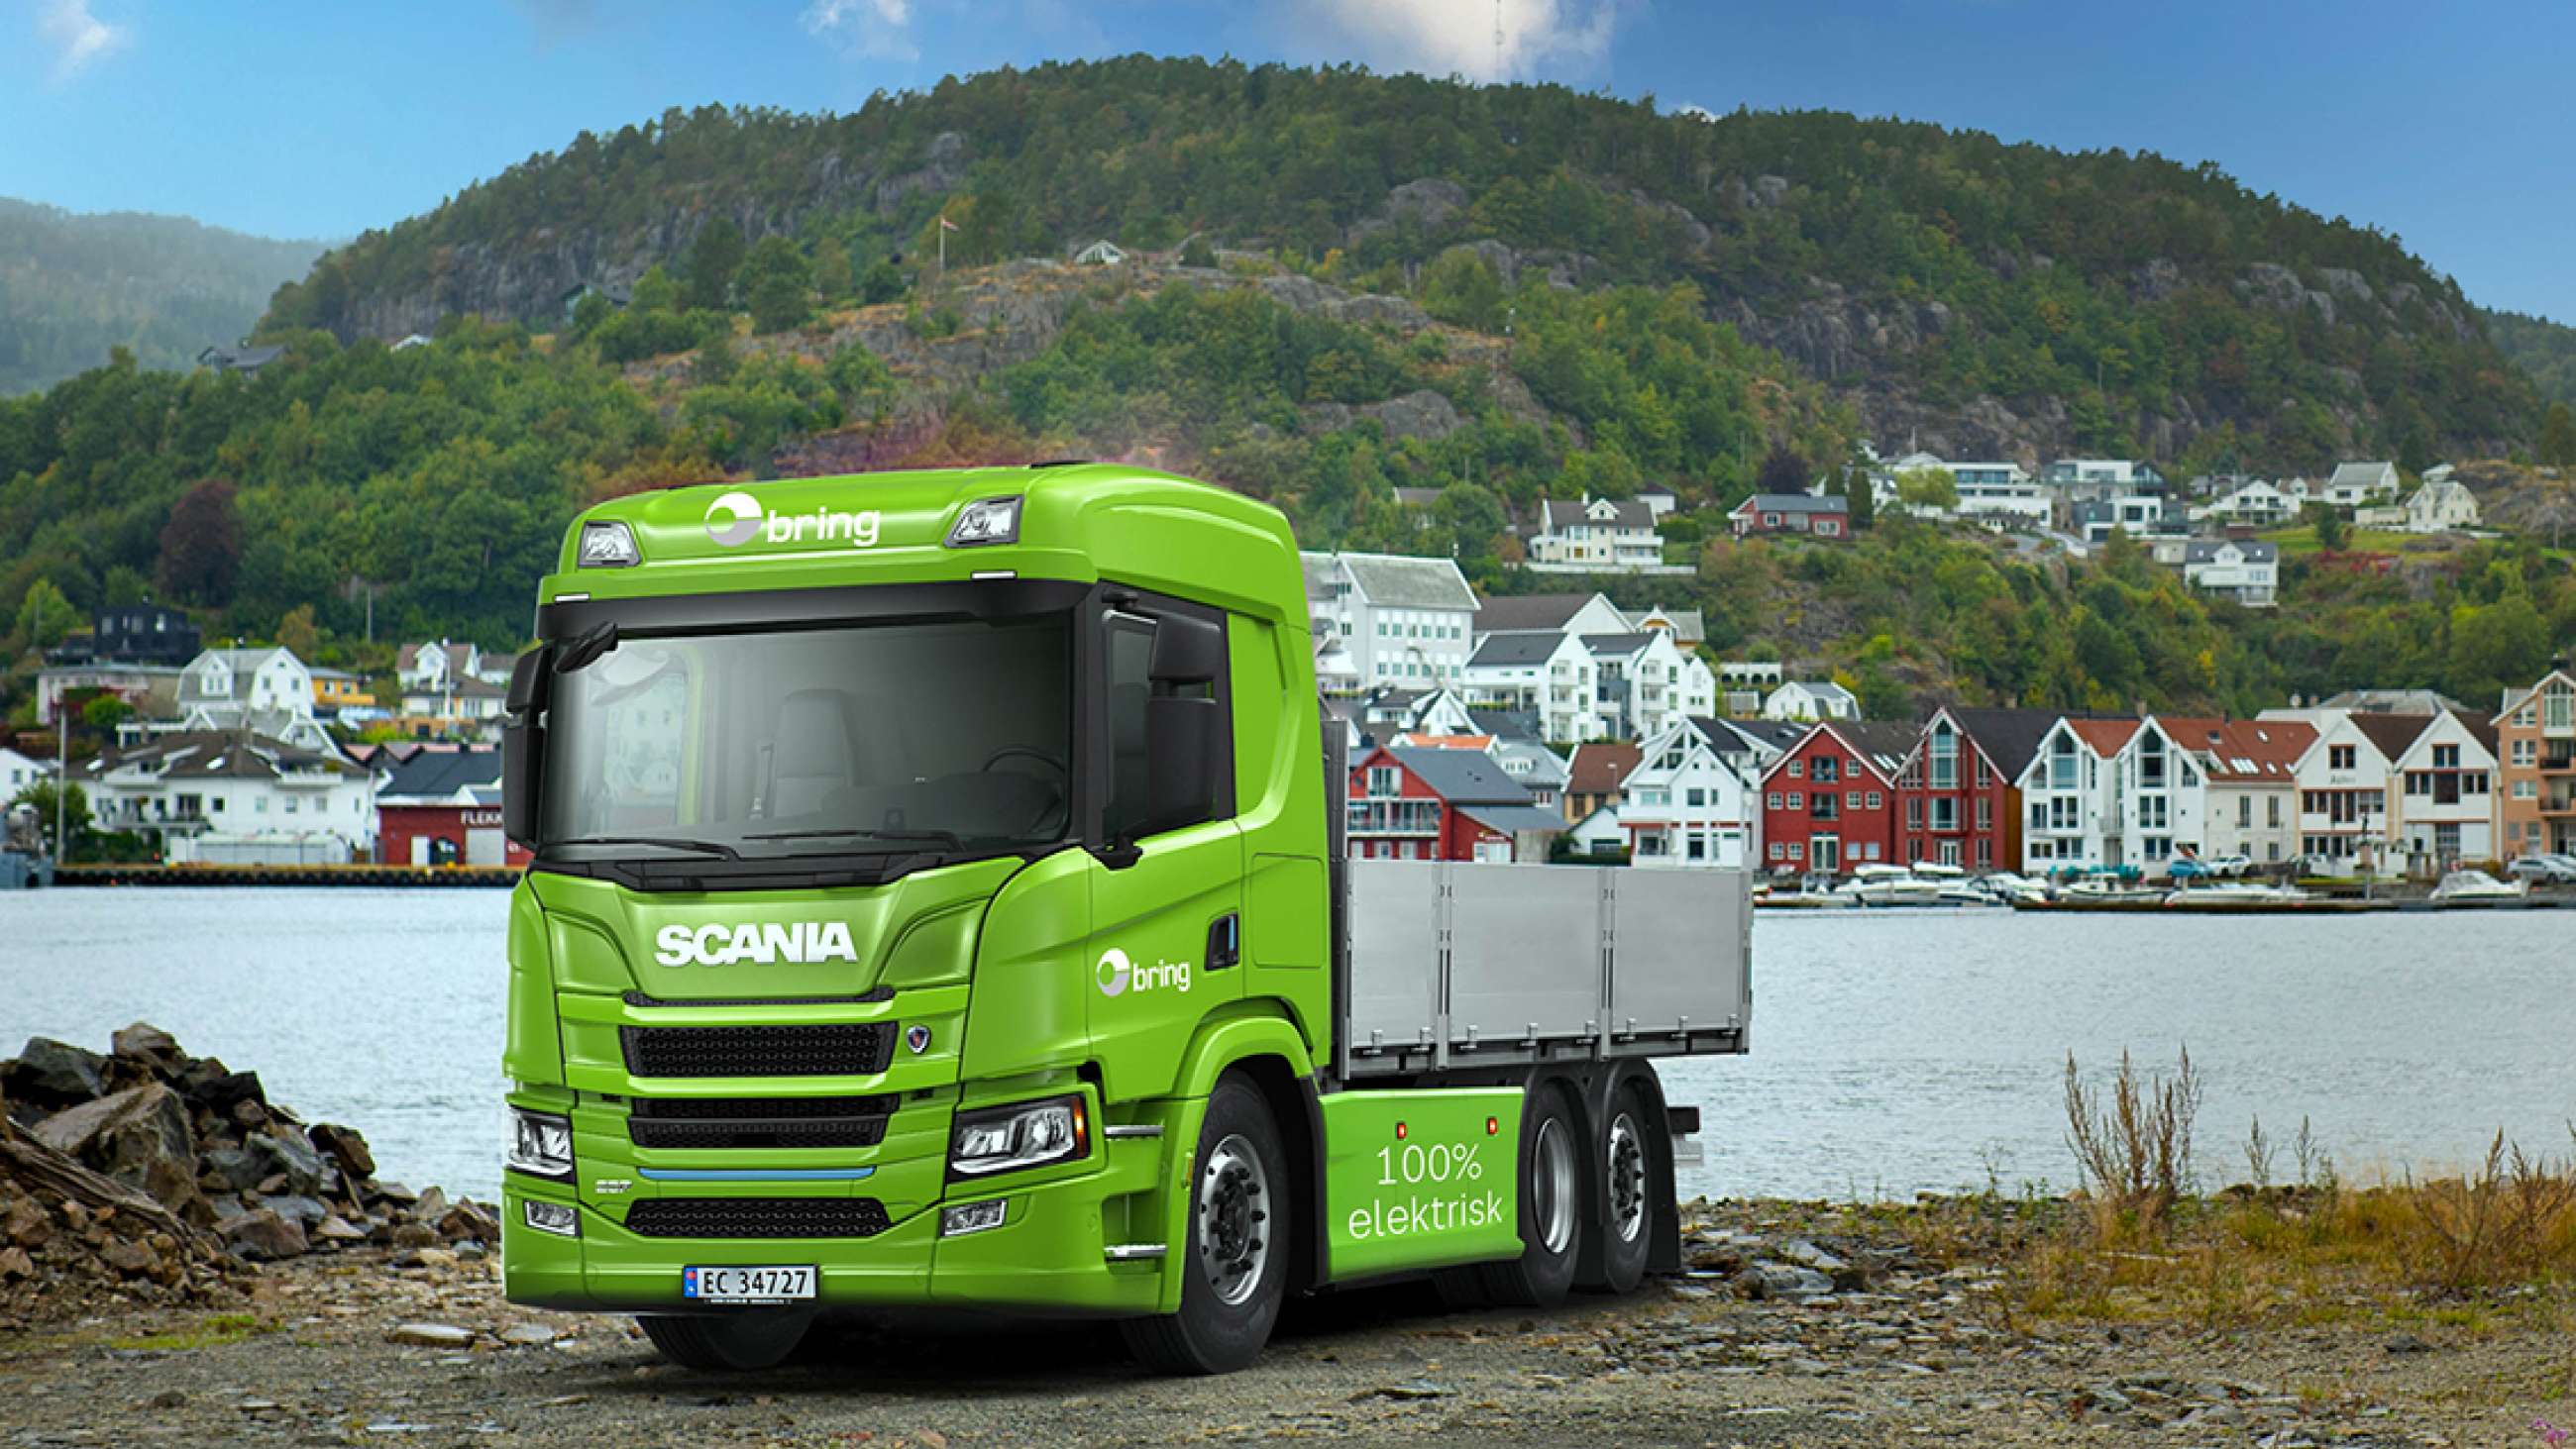 Bring med ny Scania el-lastebil til tungtransport